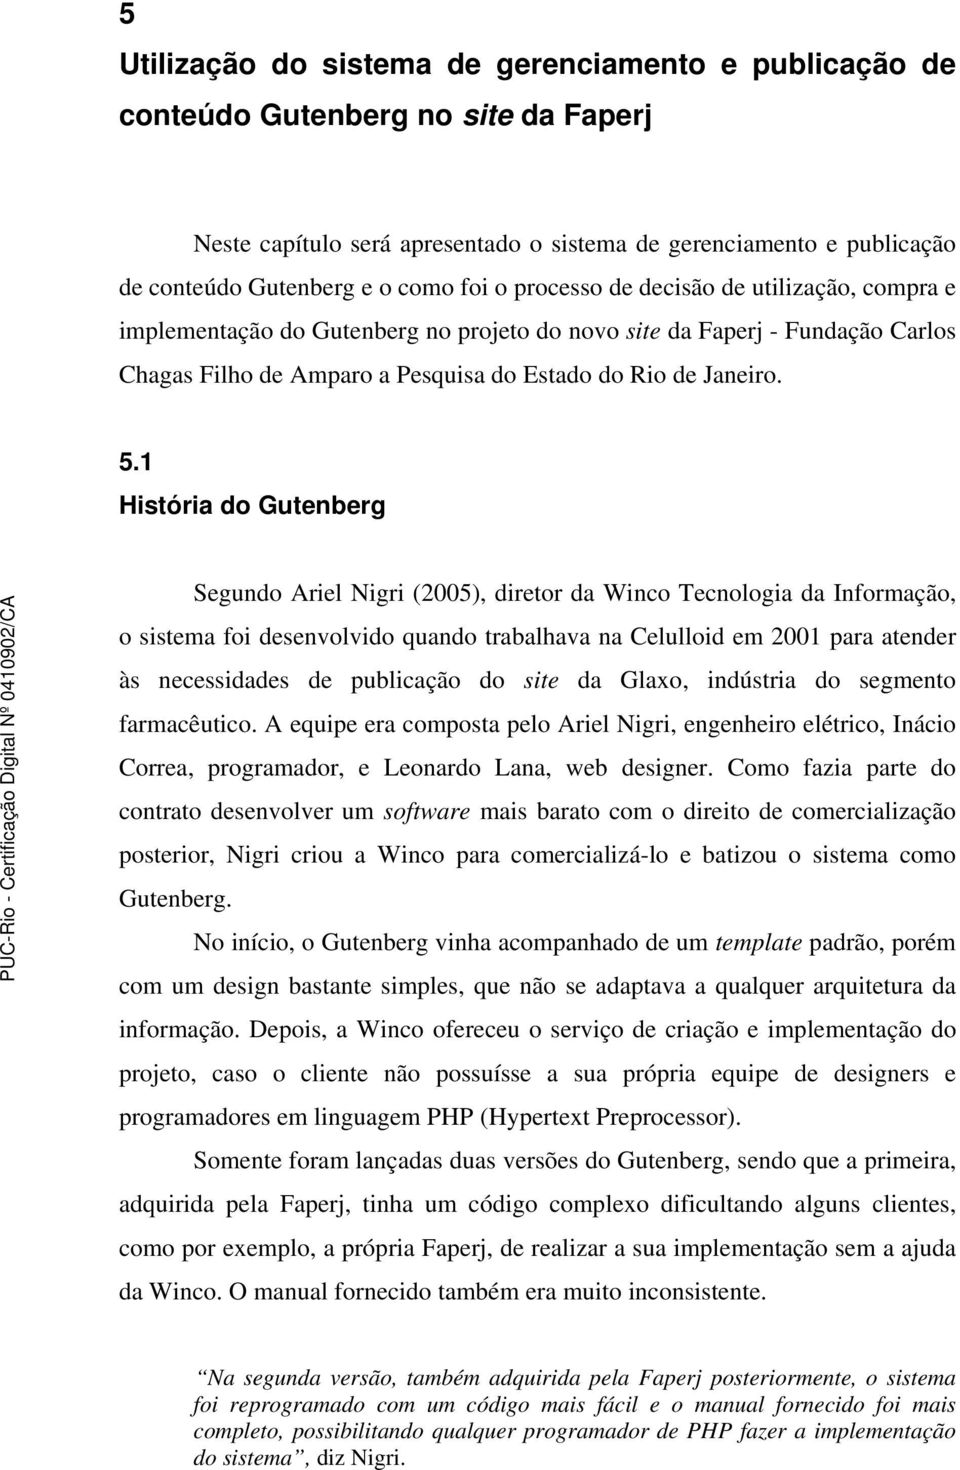 1 História do Gutenberg Segundo Ariel Nigri (2005), diretor da Winco Tecnologia da Informação, o sistema foi desenvolvido quando trabalhava na Celulloid em 2001 para atender às necessidades de